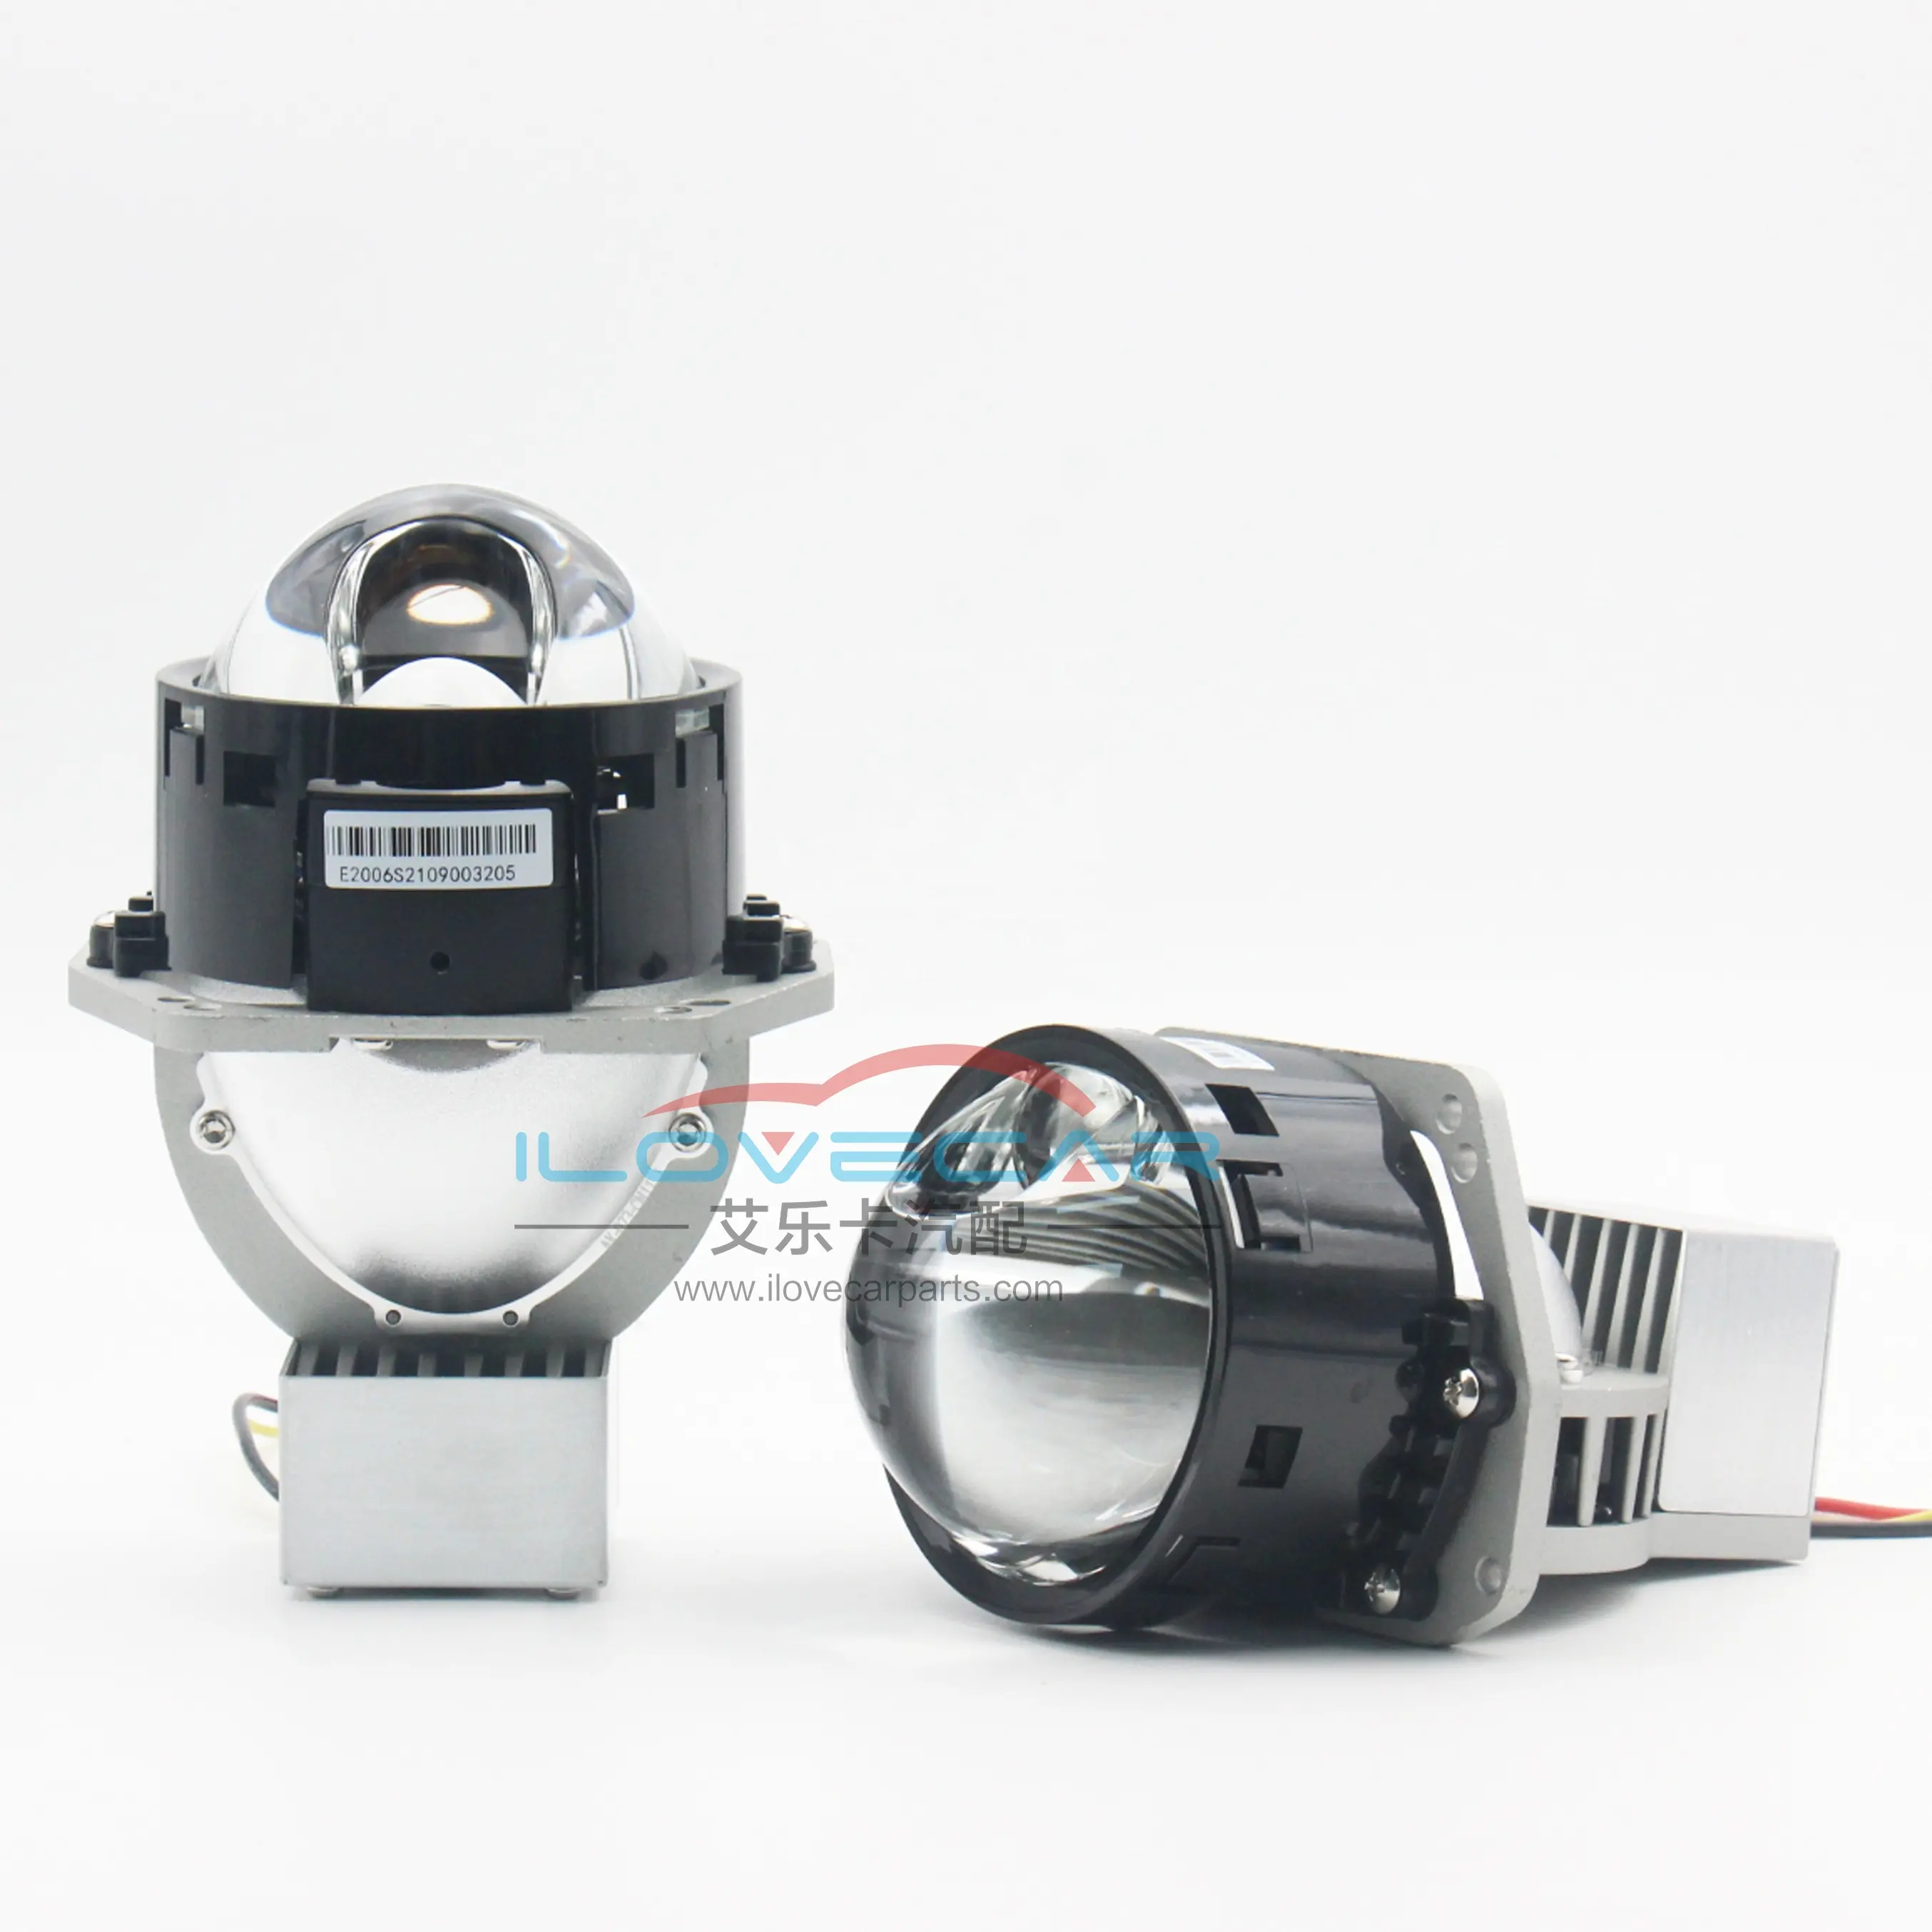 3 년 보증 65W 3.0 '인치 Bi-LED 프로젝터 렌즈 RHD LHD 자동차 헤드 라이트 개조 Bi LED 헤드 라이트 프로젝터 렌즈